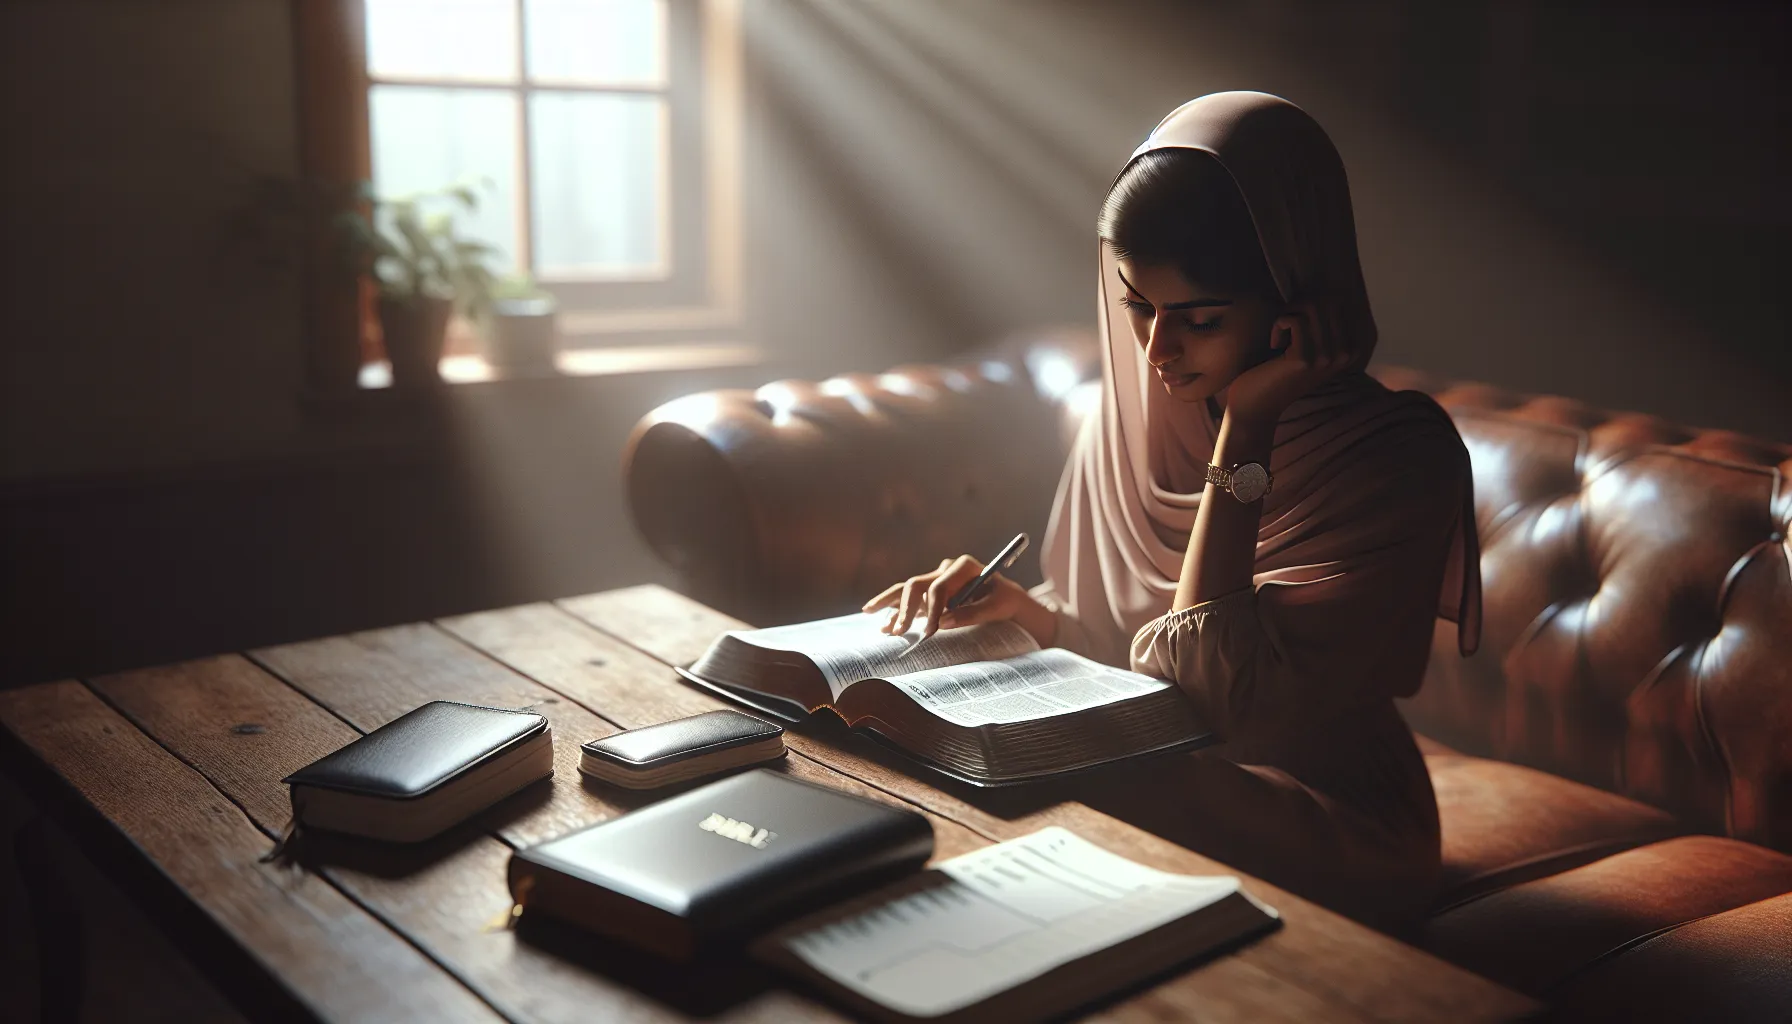 Imagen representativa de una persona leyendo la Biblia mientras organiza su agenda